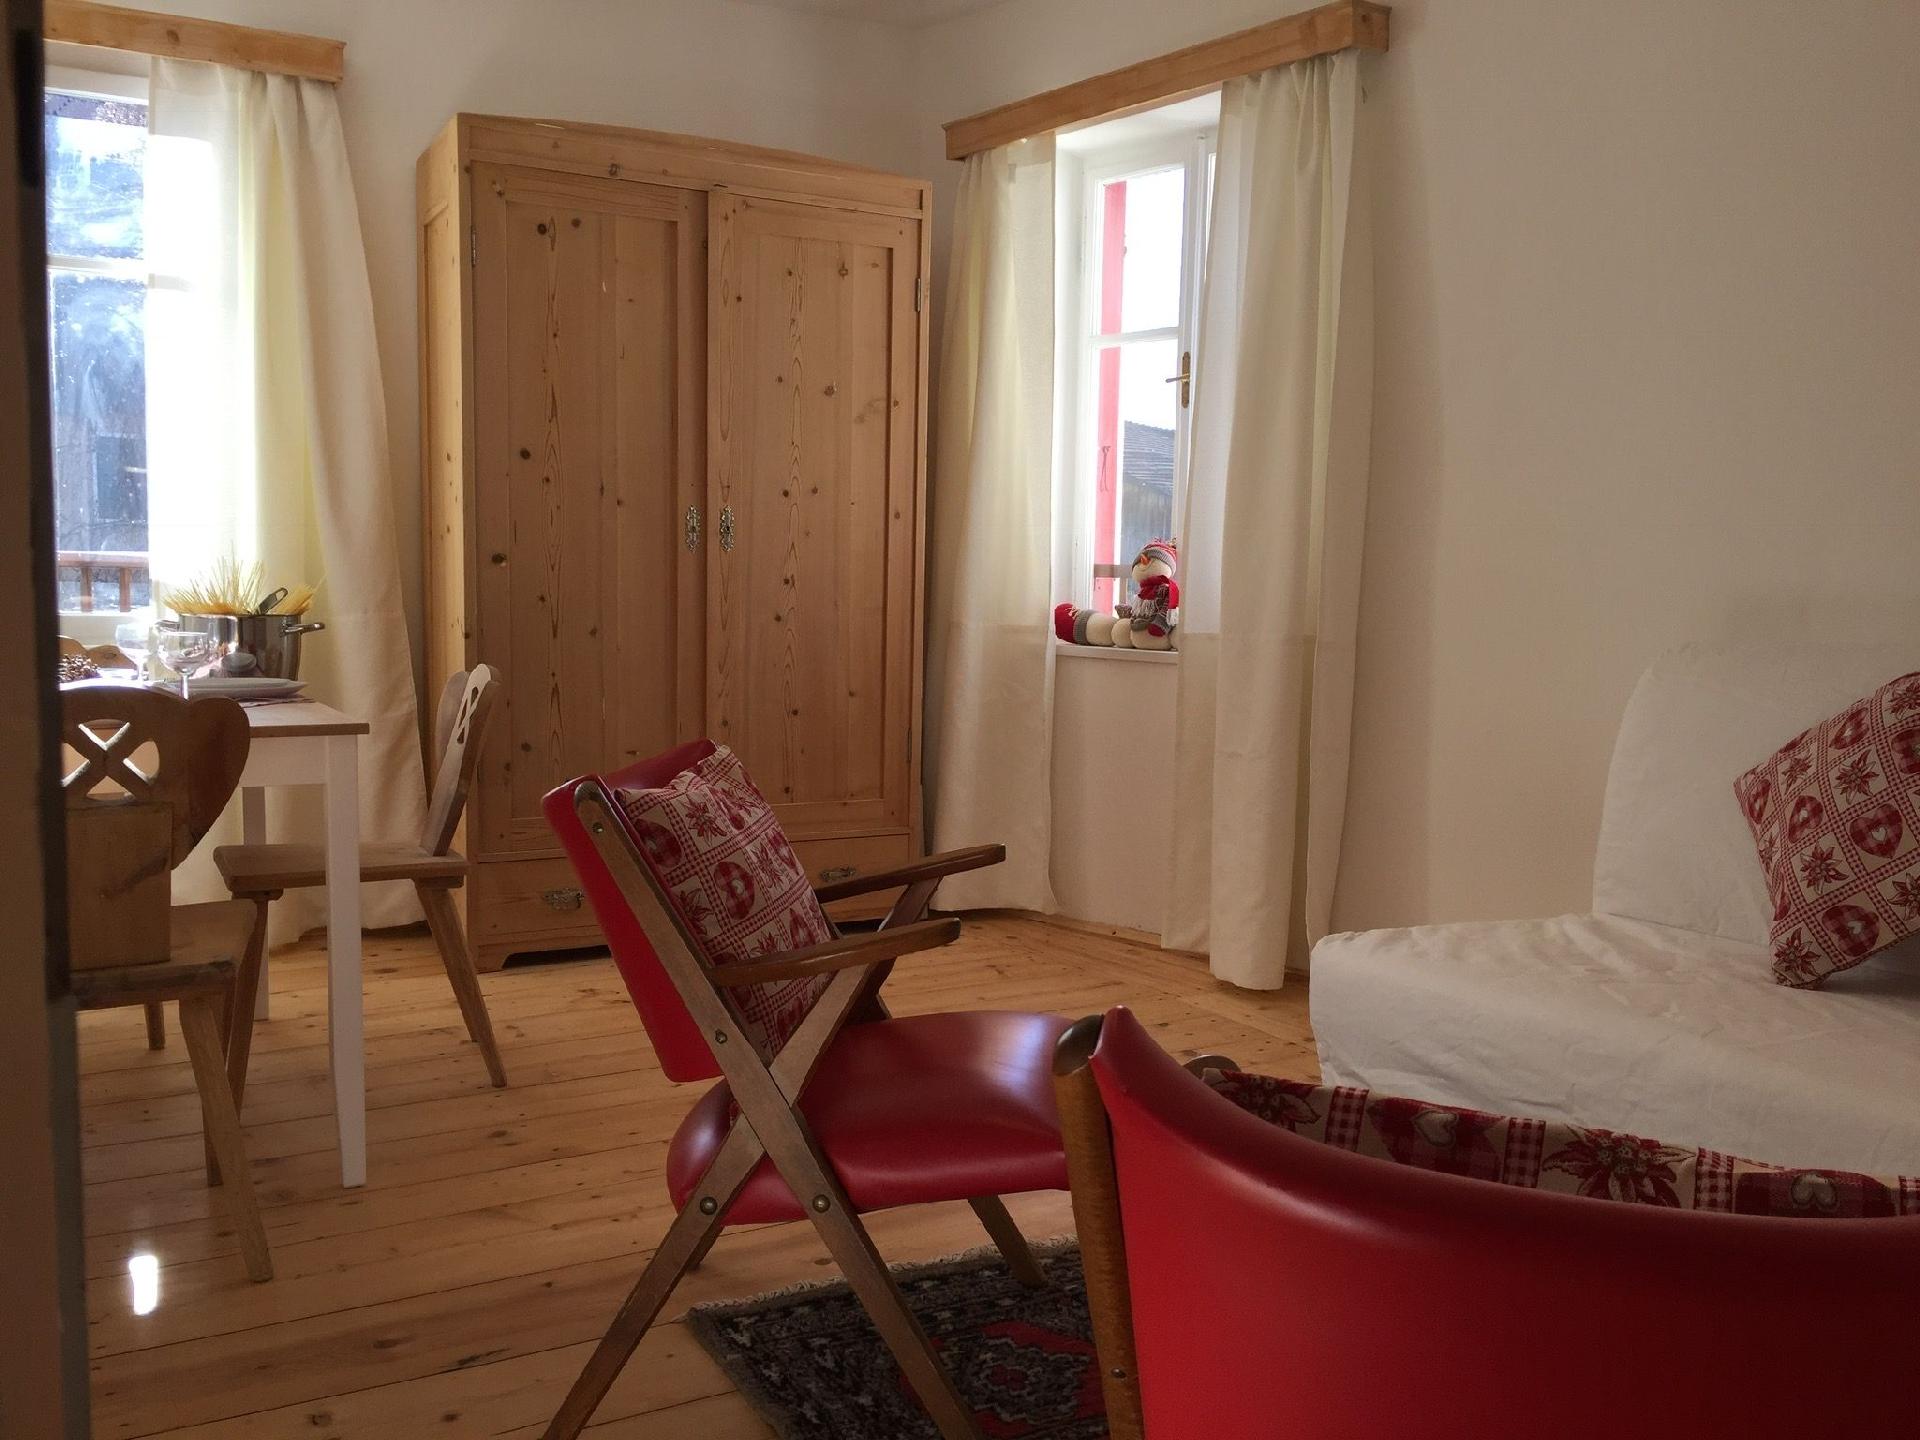 Ferienwohnung für 6 Personen ca. 80 m² i Ferienhaus in Italien